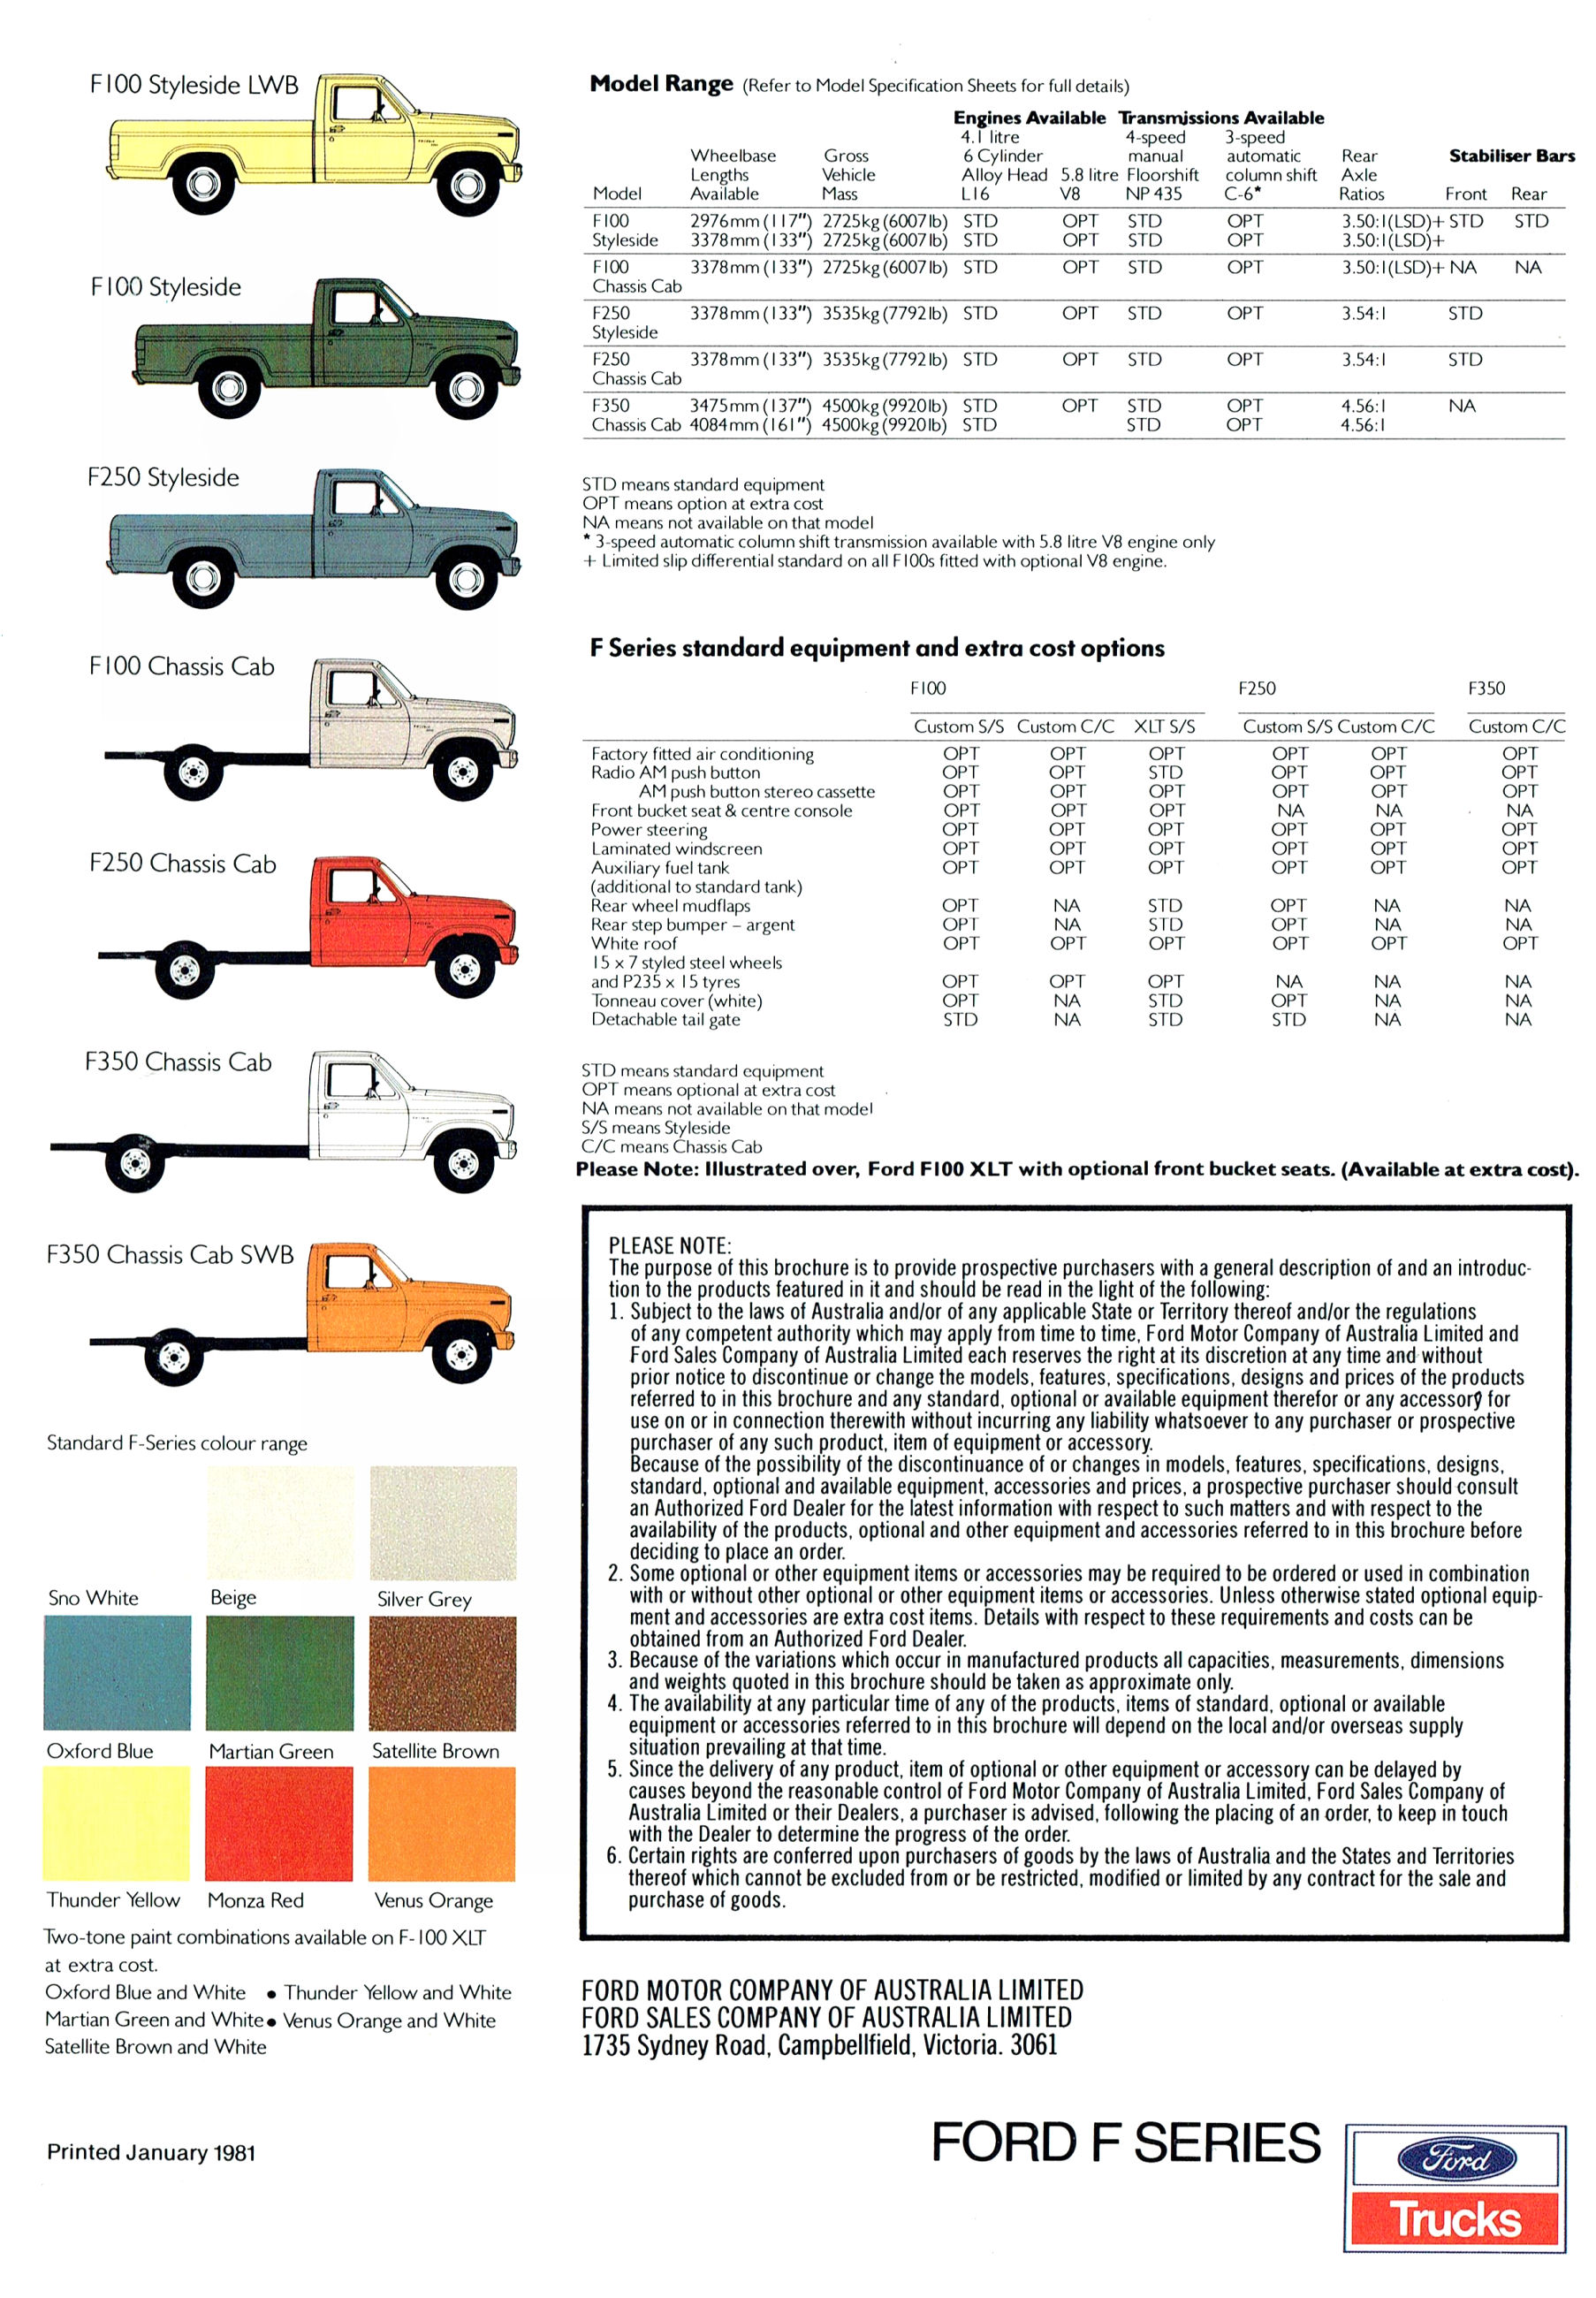 1981 Ford F Series Sheet (Aus)-02.jpg-2022-12-7 13.40.47